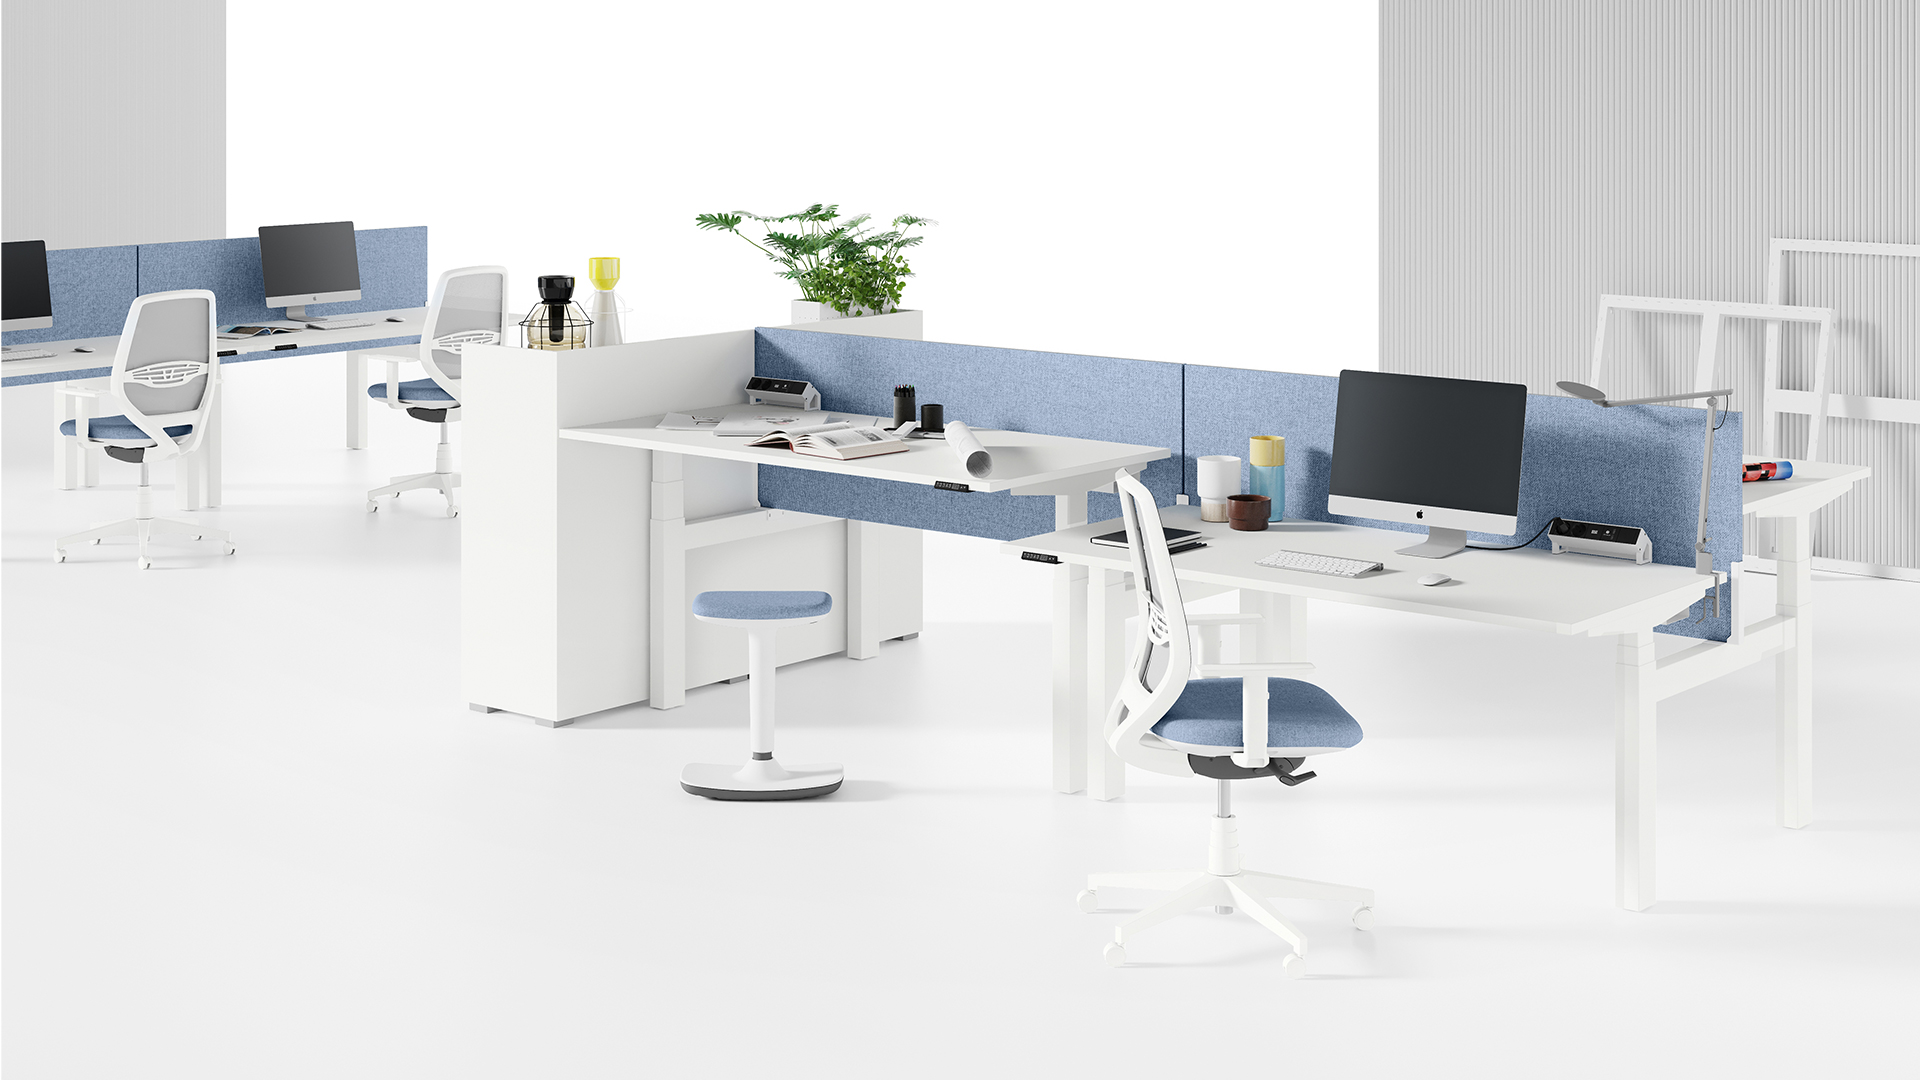 Коллекция столов Up сочетается с любой другой офисной мебелью